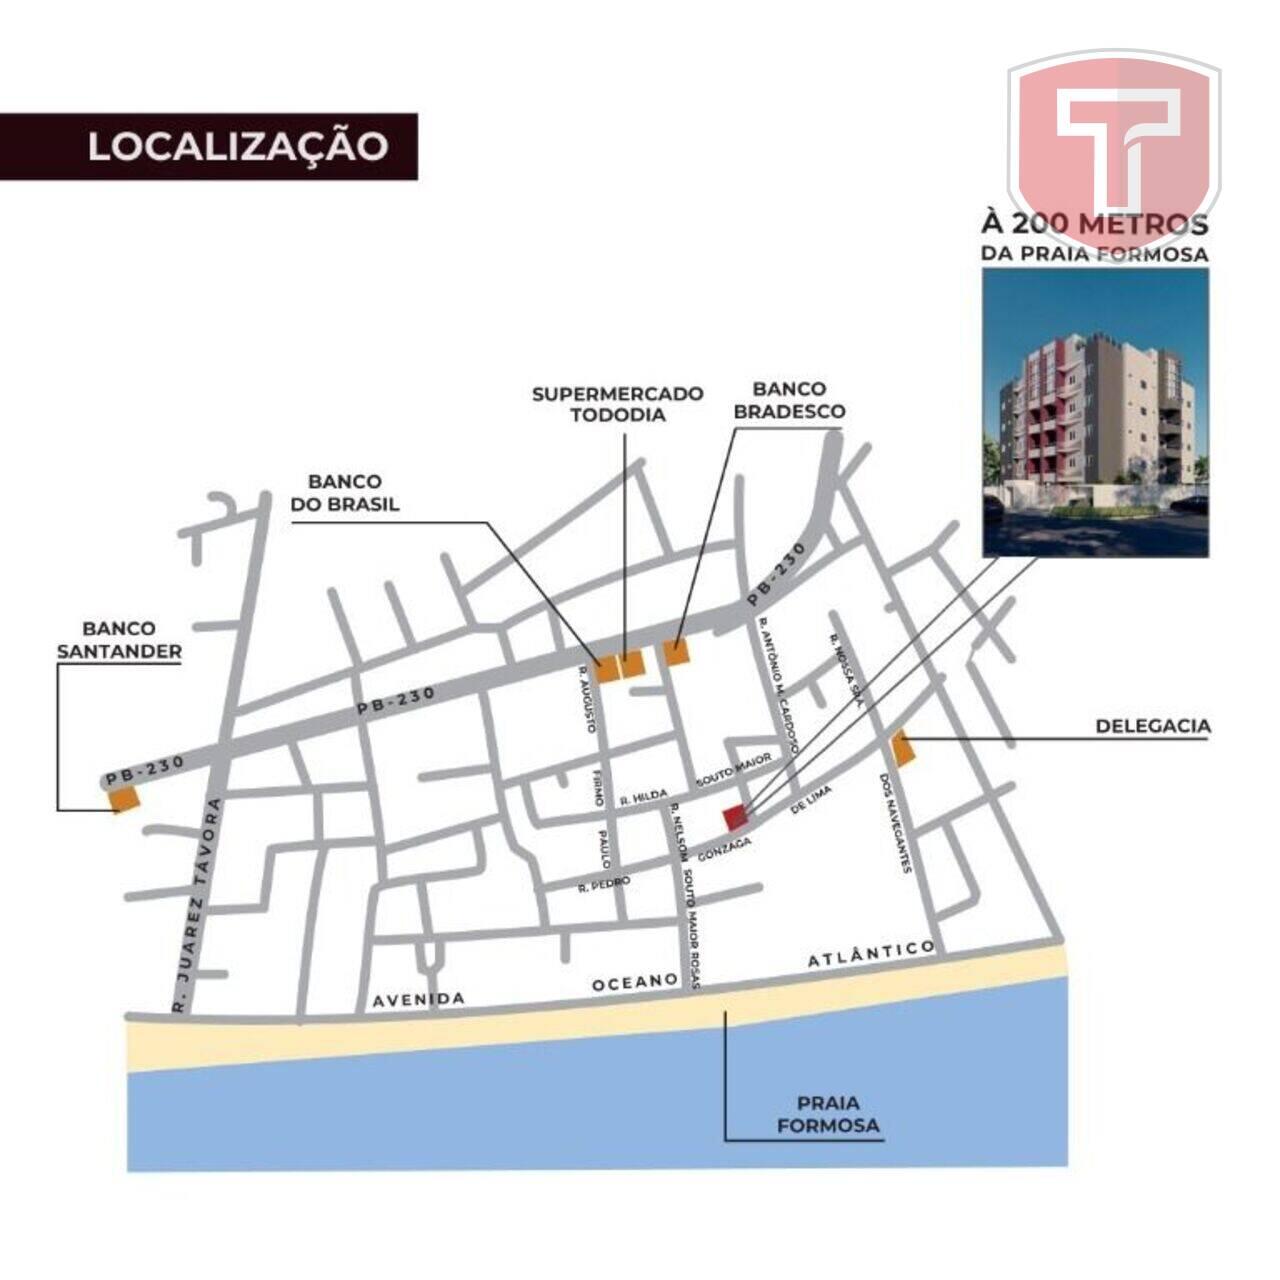 Kaunis - Apartamento com 2 dormitórios à venda - Praia Formosa, Cabedelo/PB